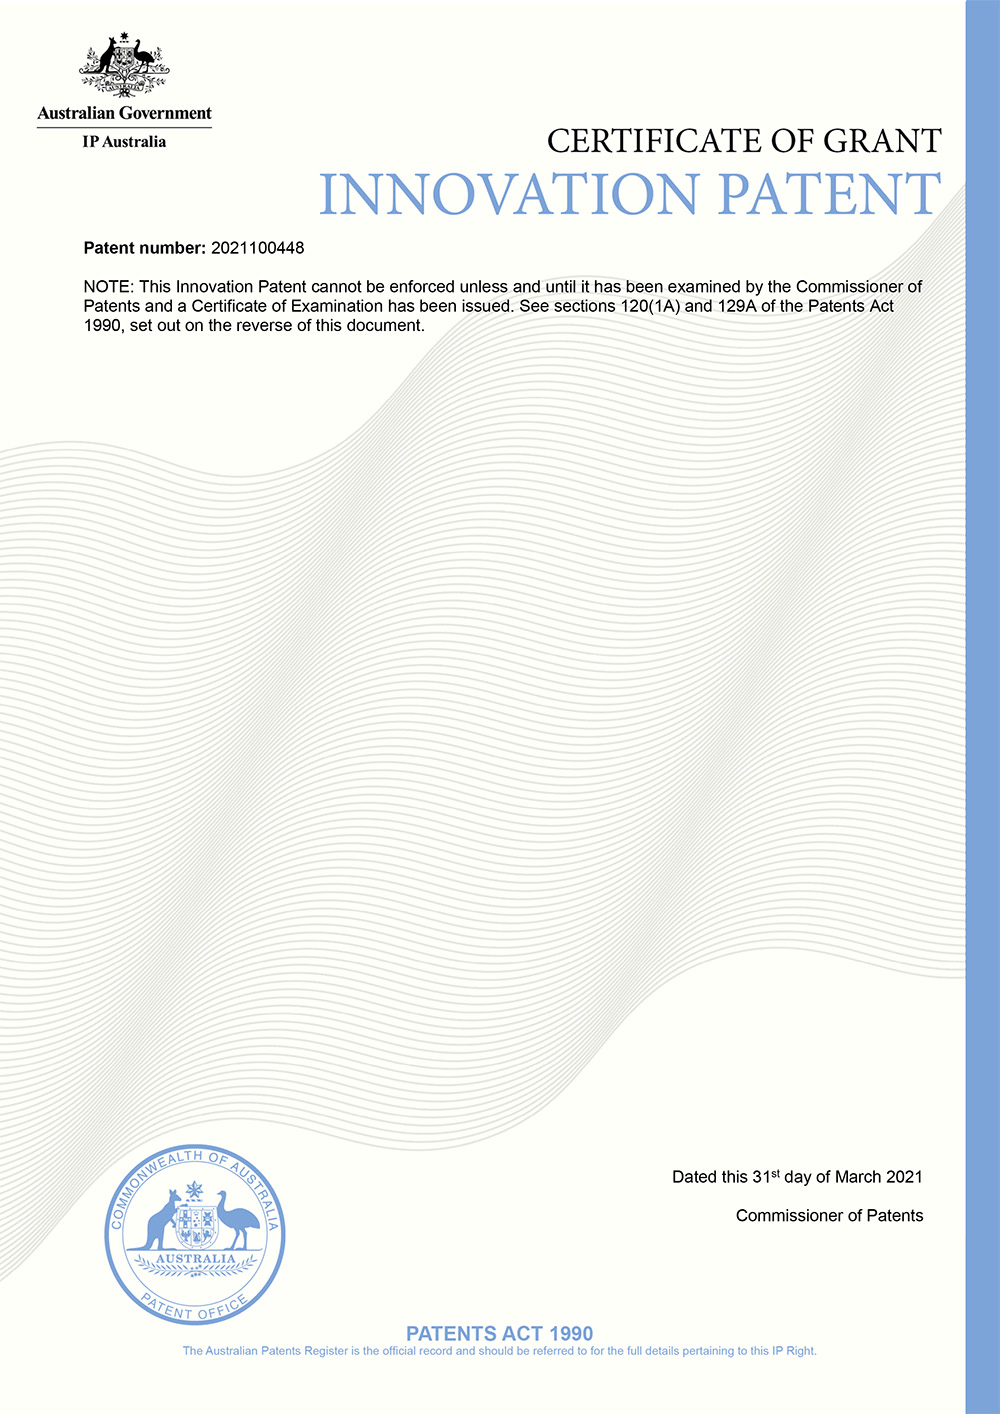 澳大利亚革新-2020-6482_2021100448_基于模糊贝叶斯网络的混凝土耐久性动态综合评价和管控方法_专利证书